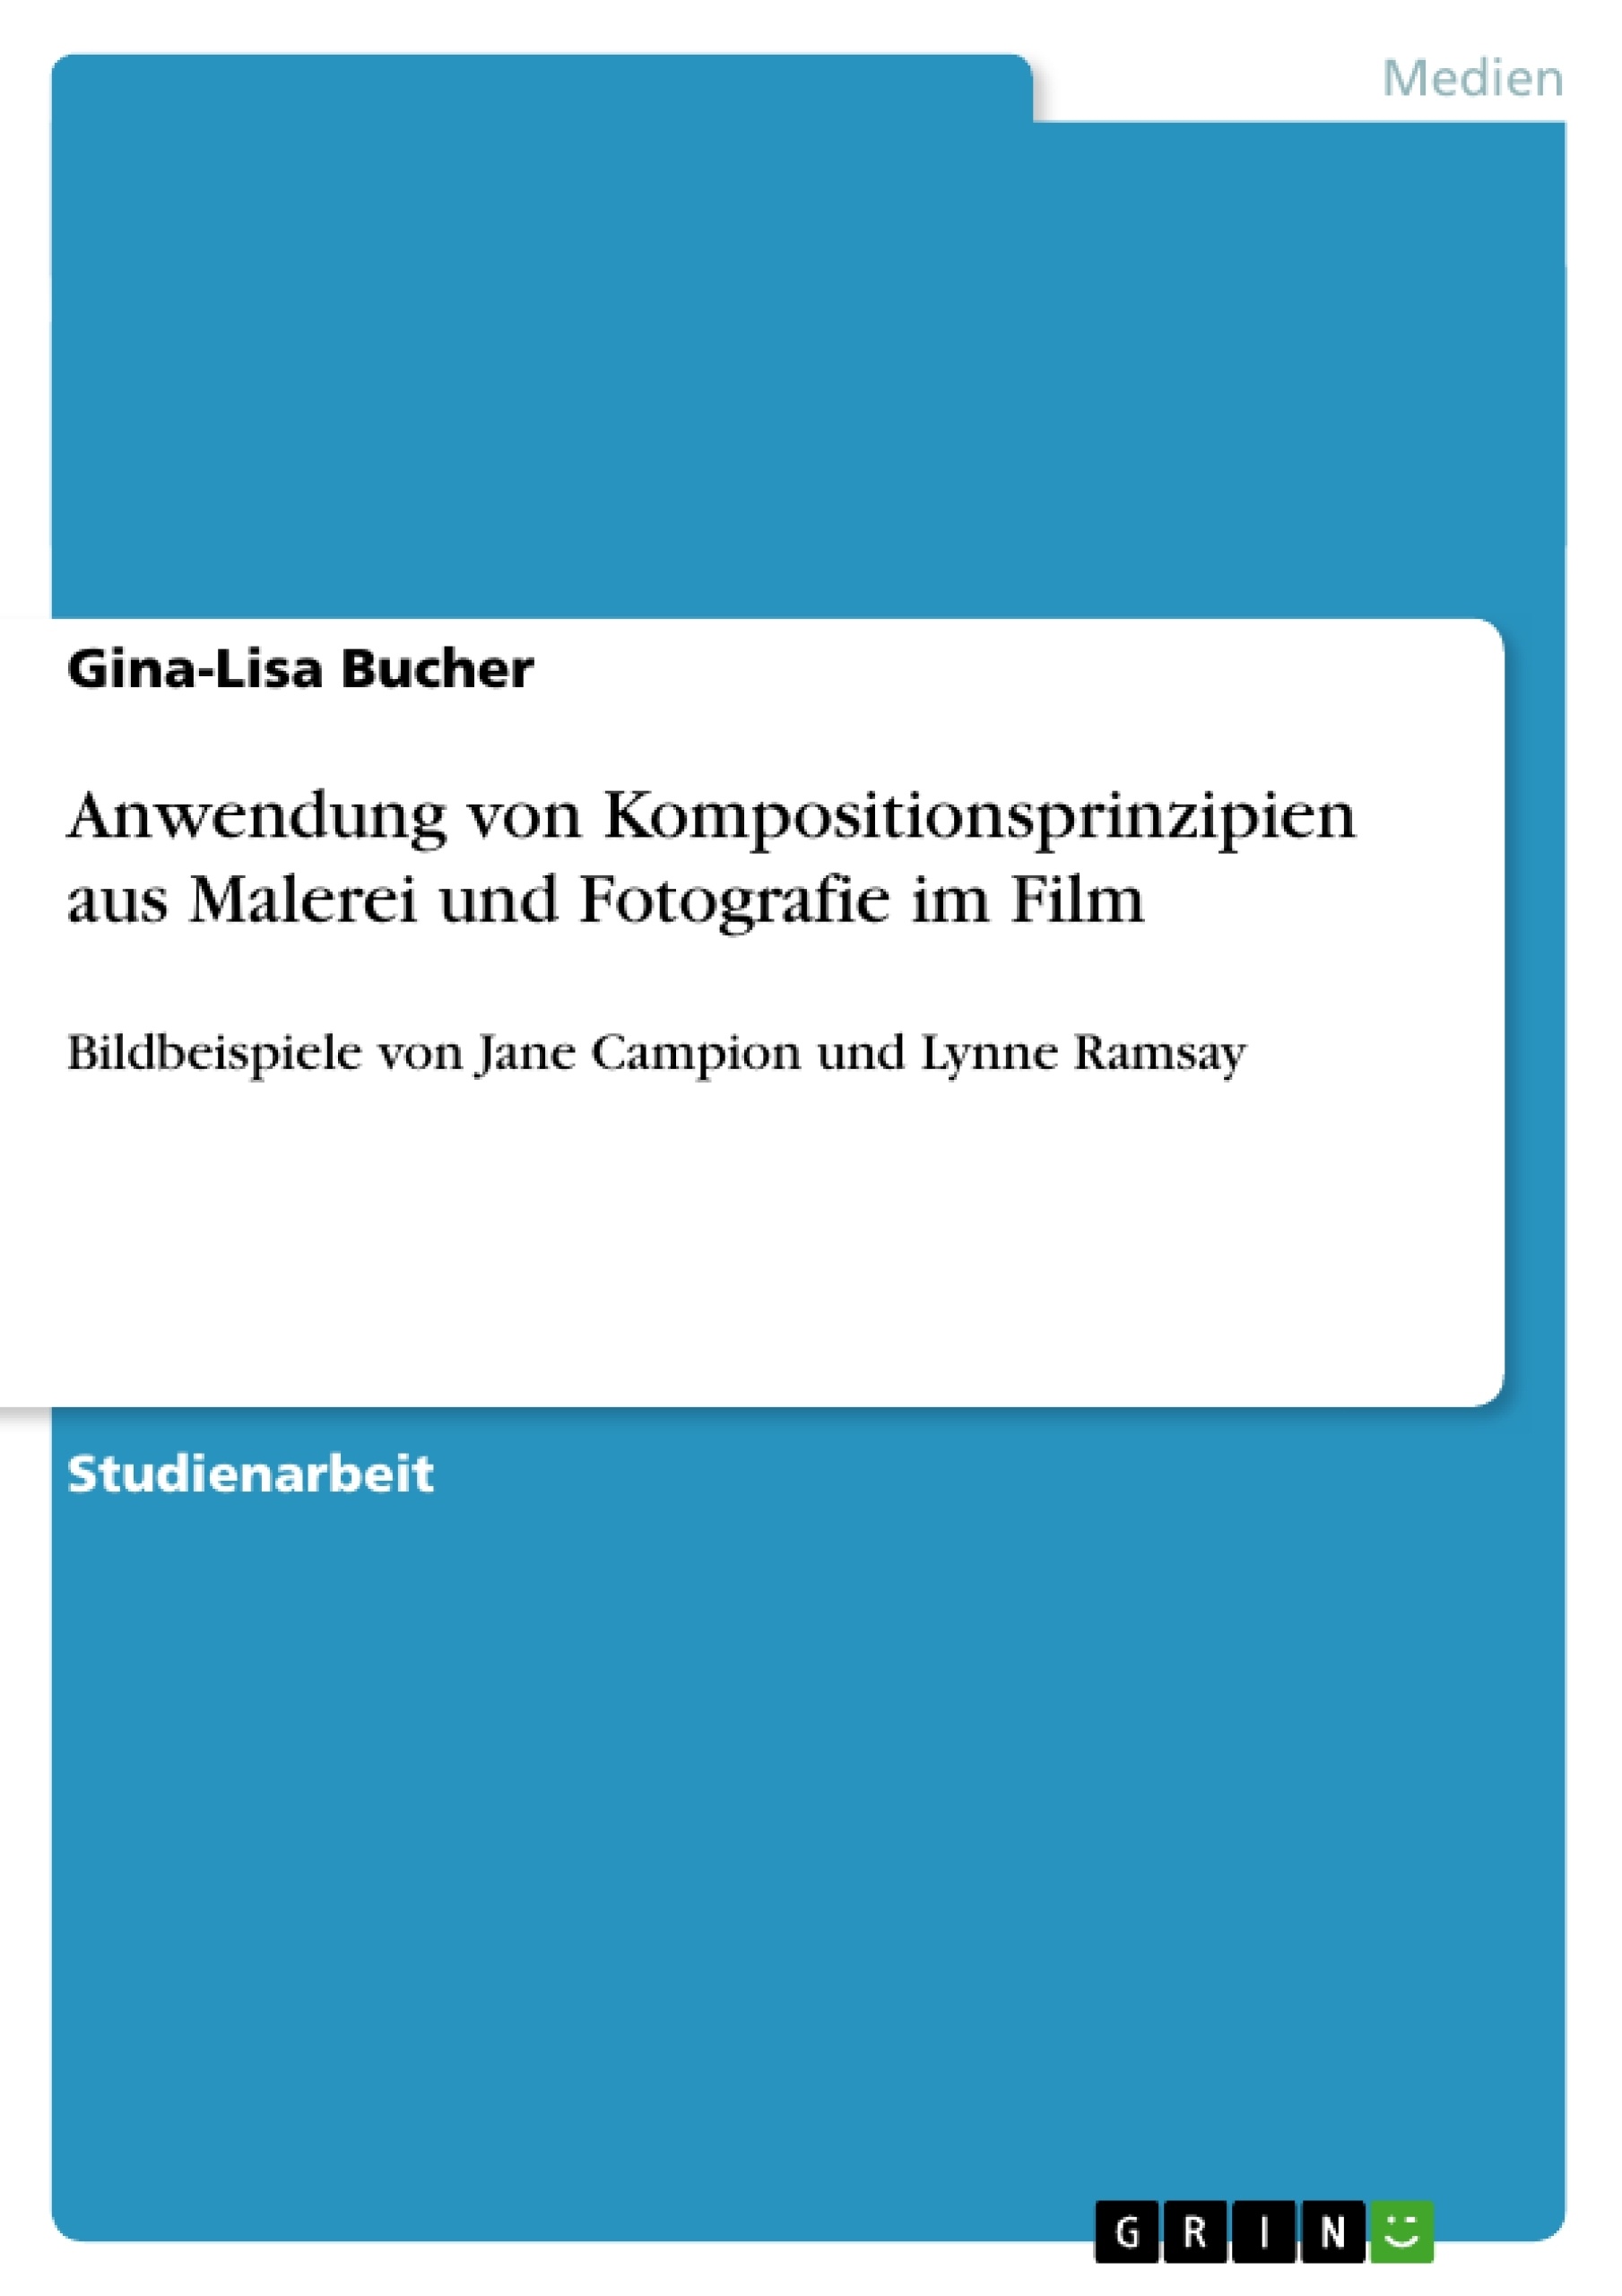 Title: Anwendung von Kompositionsprinzipien aus Malerei und Fotografie im Film